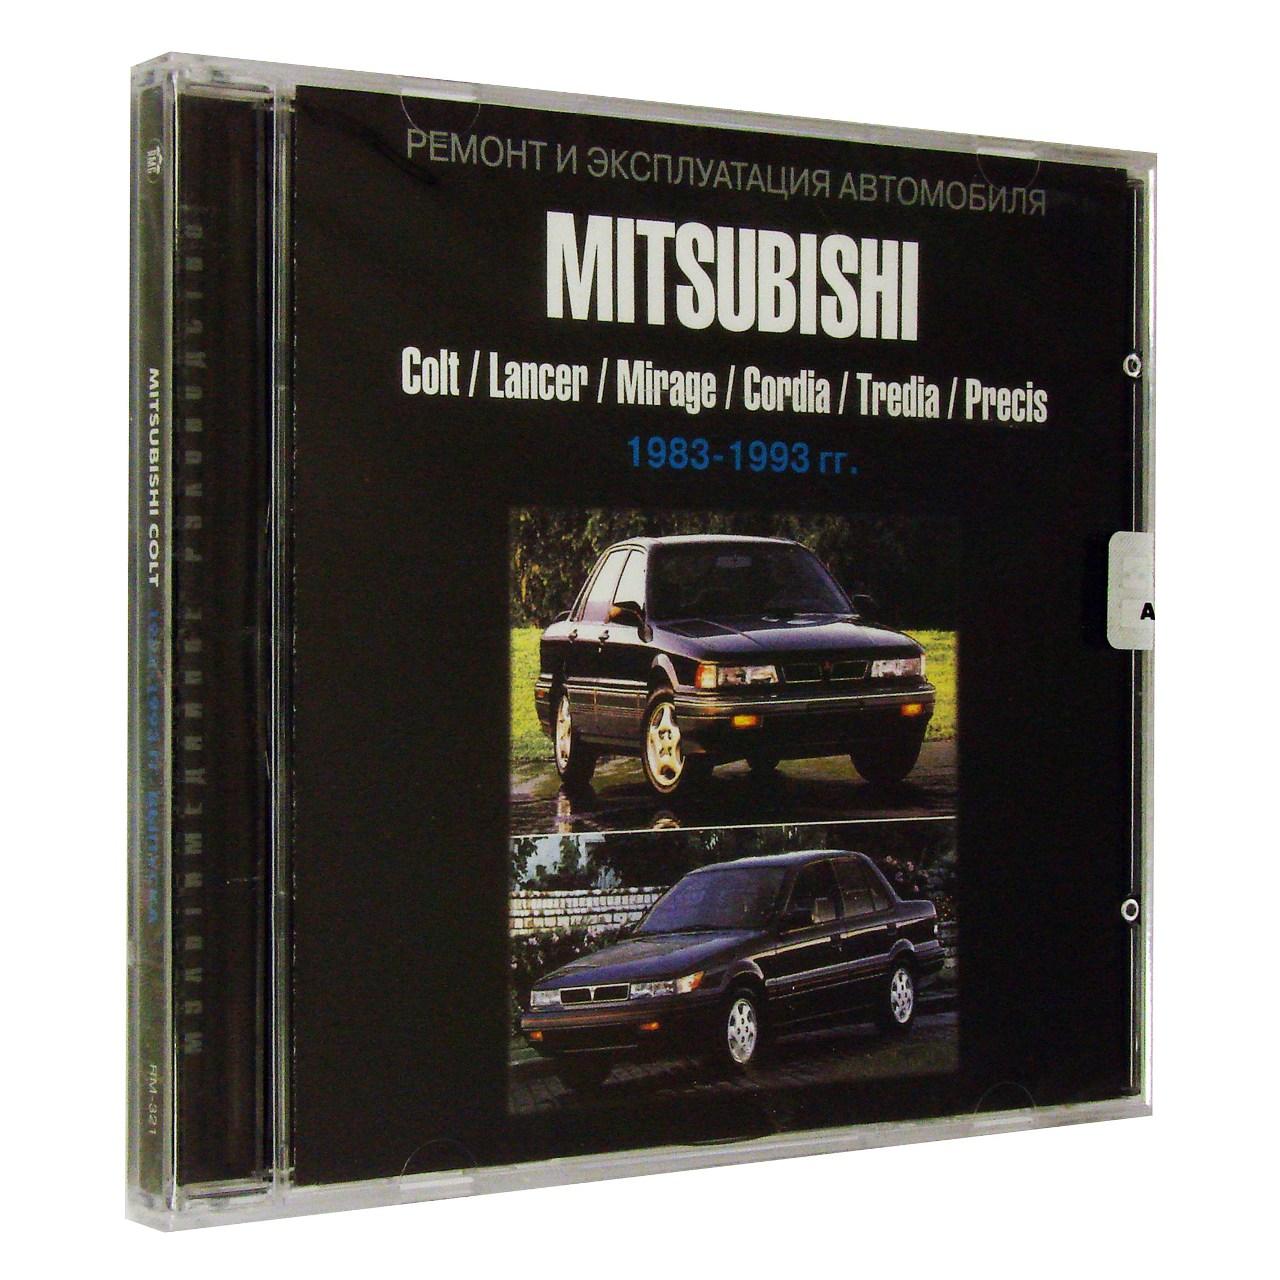 Компьютерный компакт-диск Mitsubishi Colt 1983-1993 Ремонт и эксплуатация автомобиля. (ПК), фирма "Третий Рим", 1CD